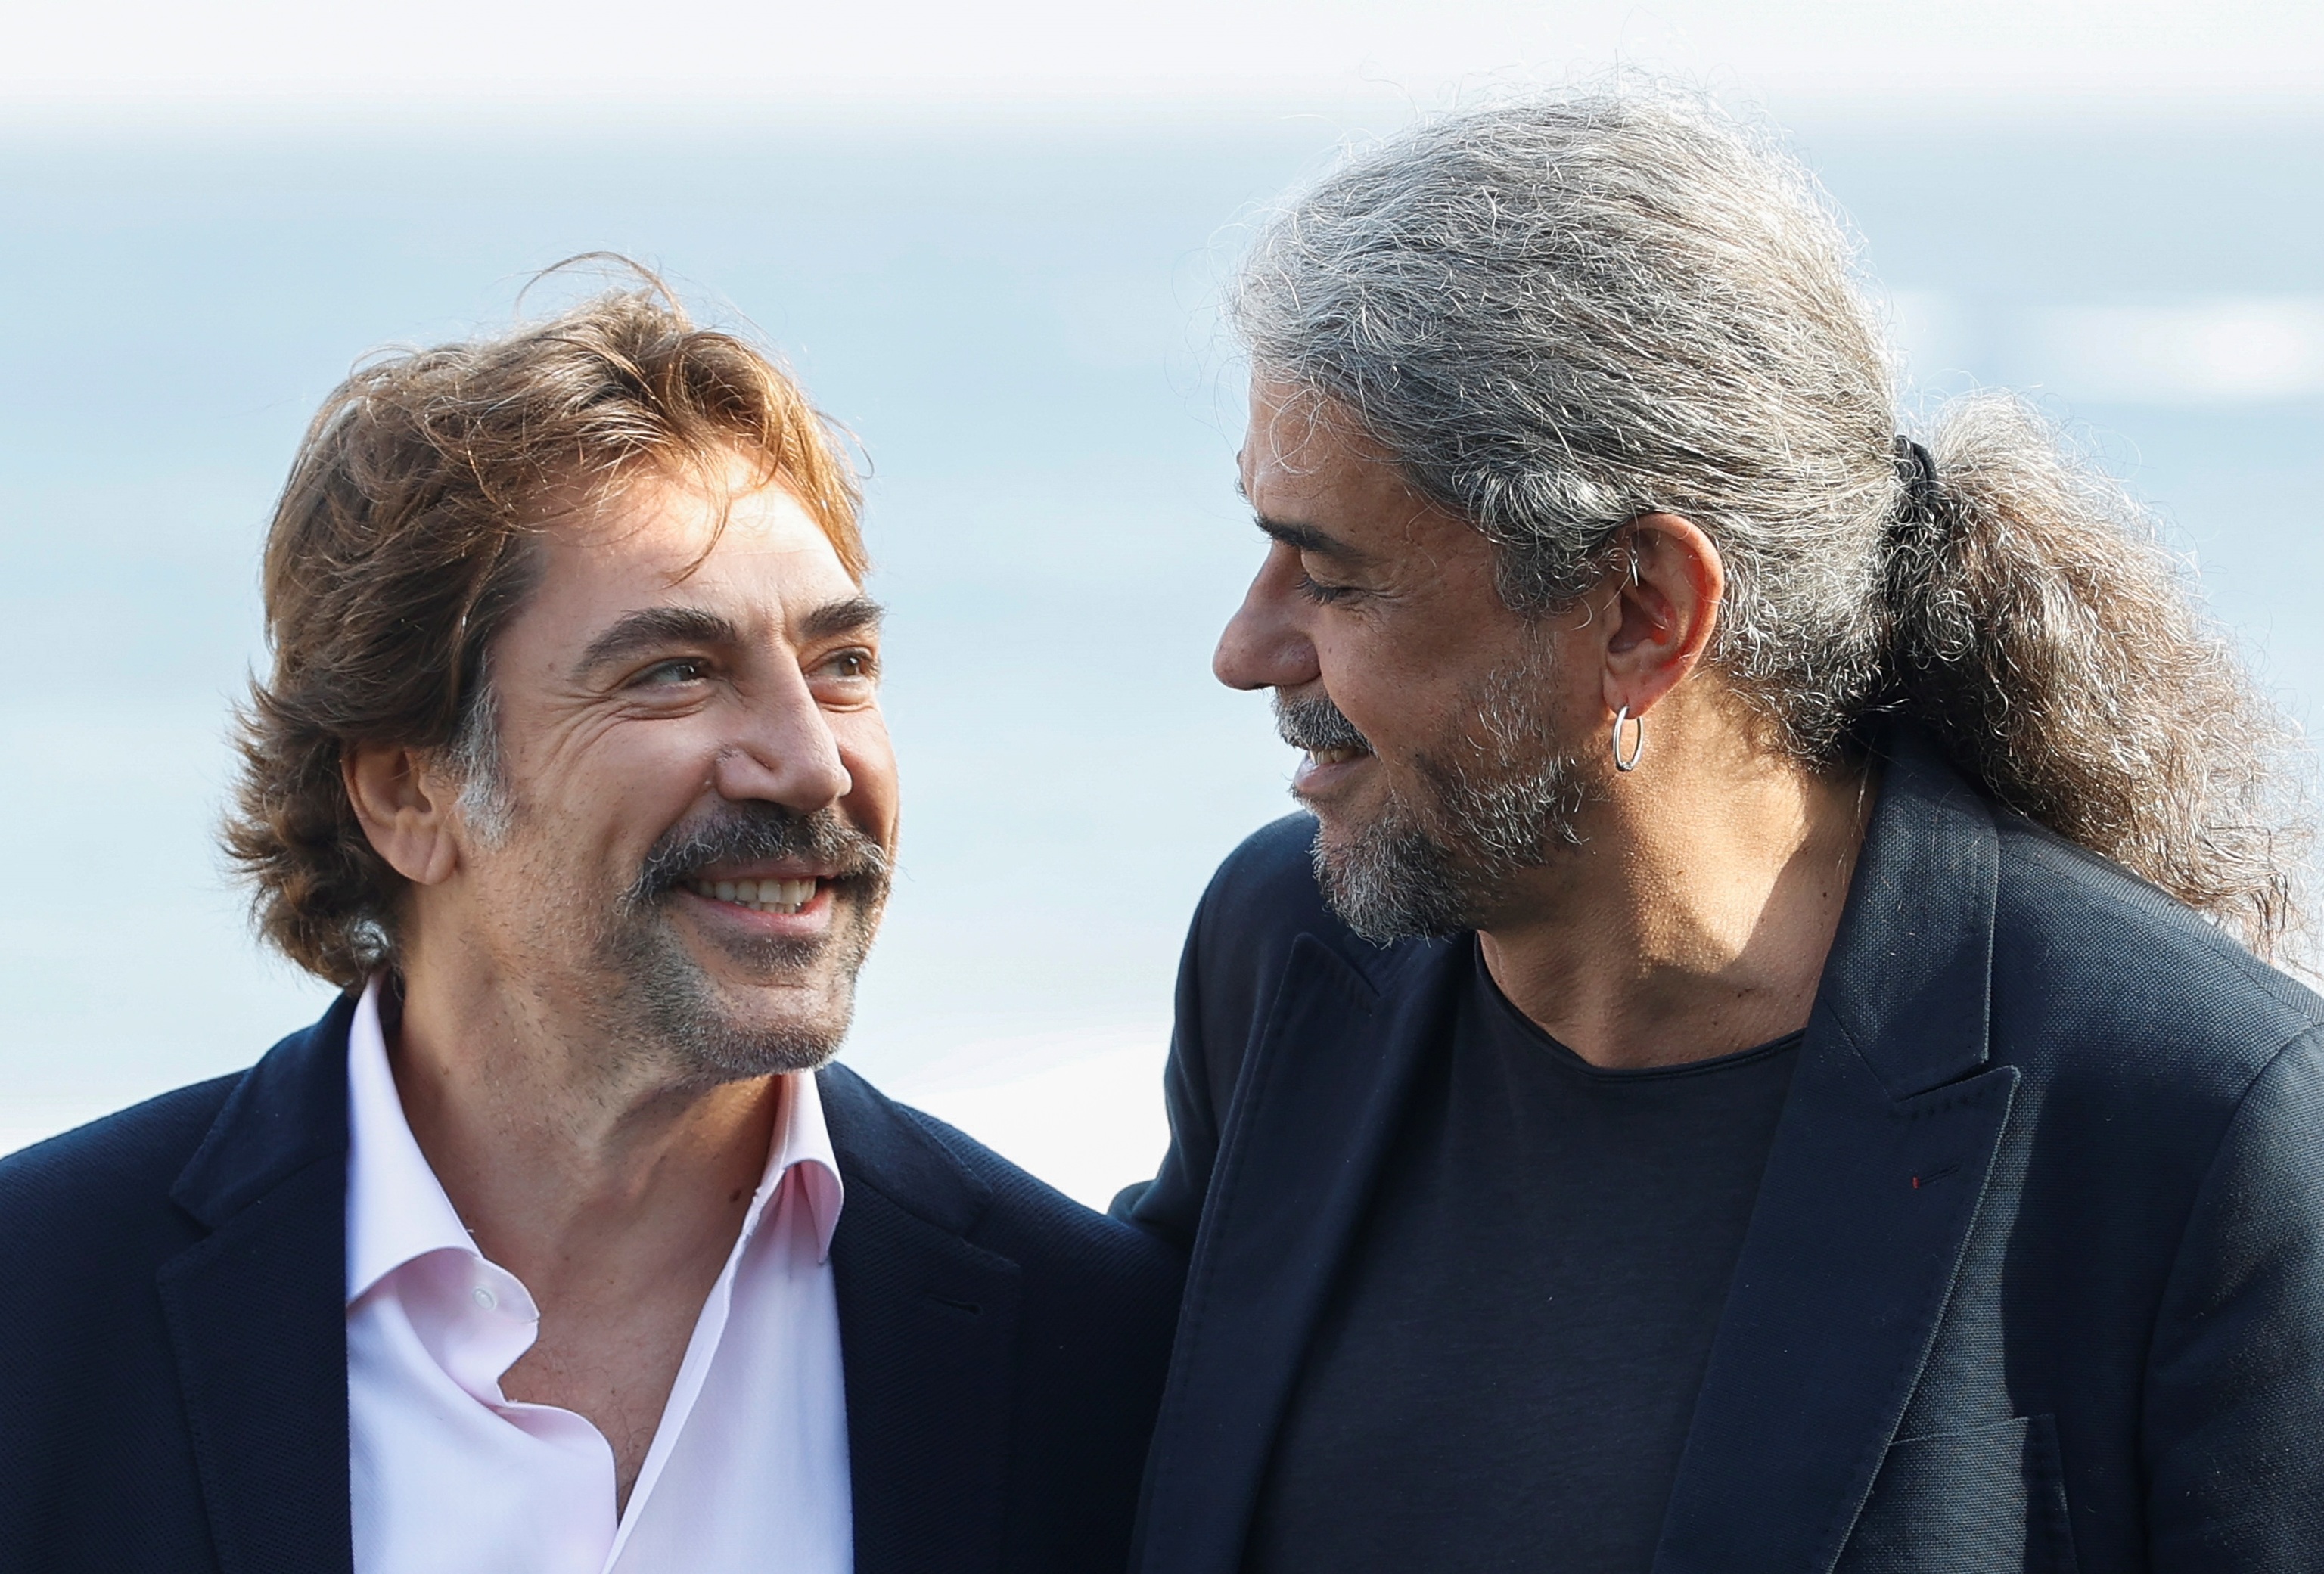 El director Fernando León de Aranoa (d) y el actor Javier Bardem durante la presentación este martes de su película "El buen patrón" en San Sebastián.